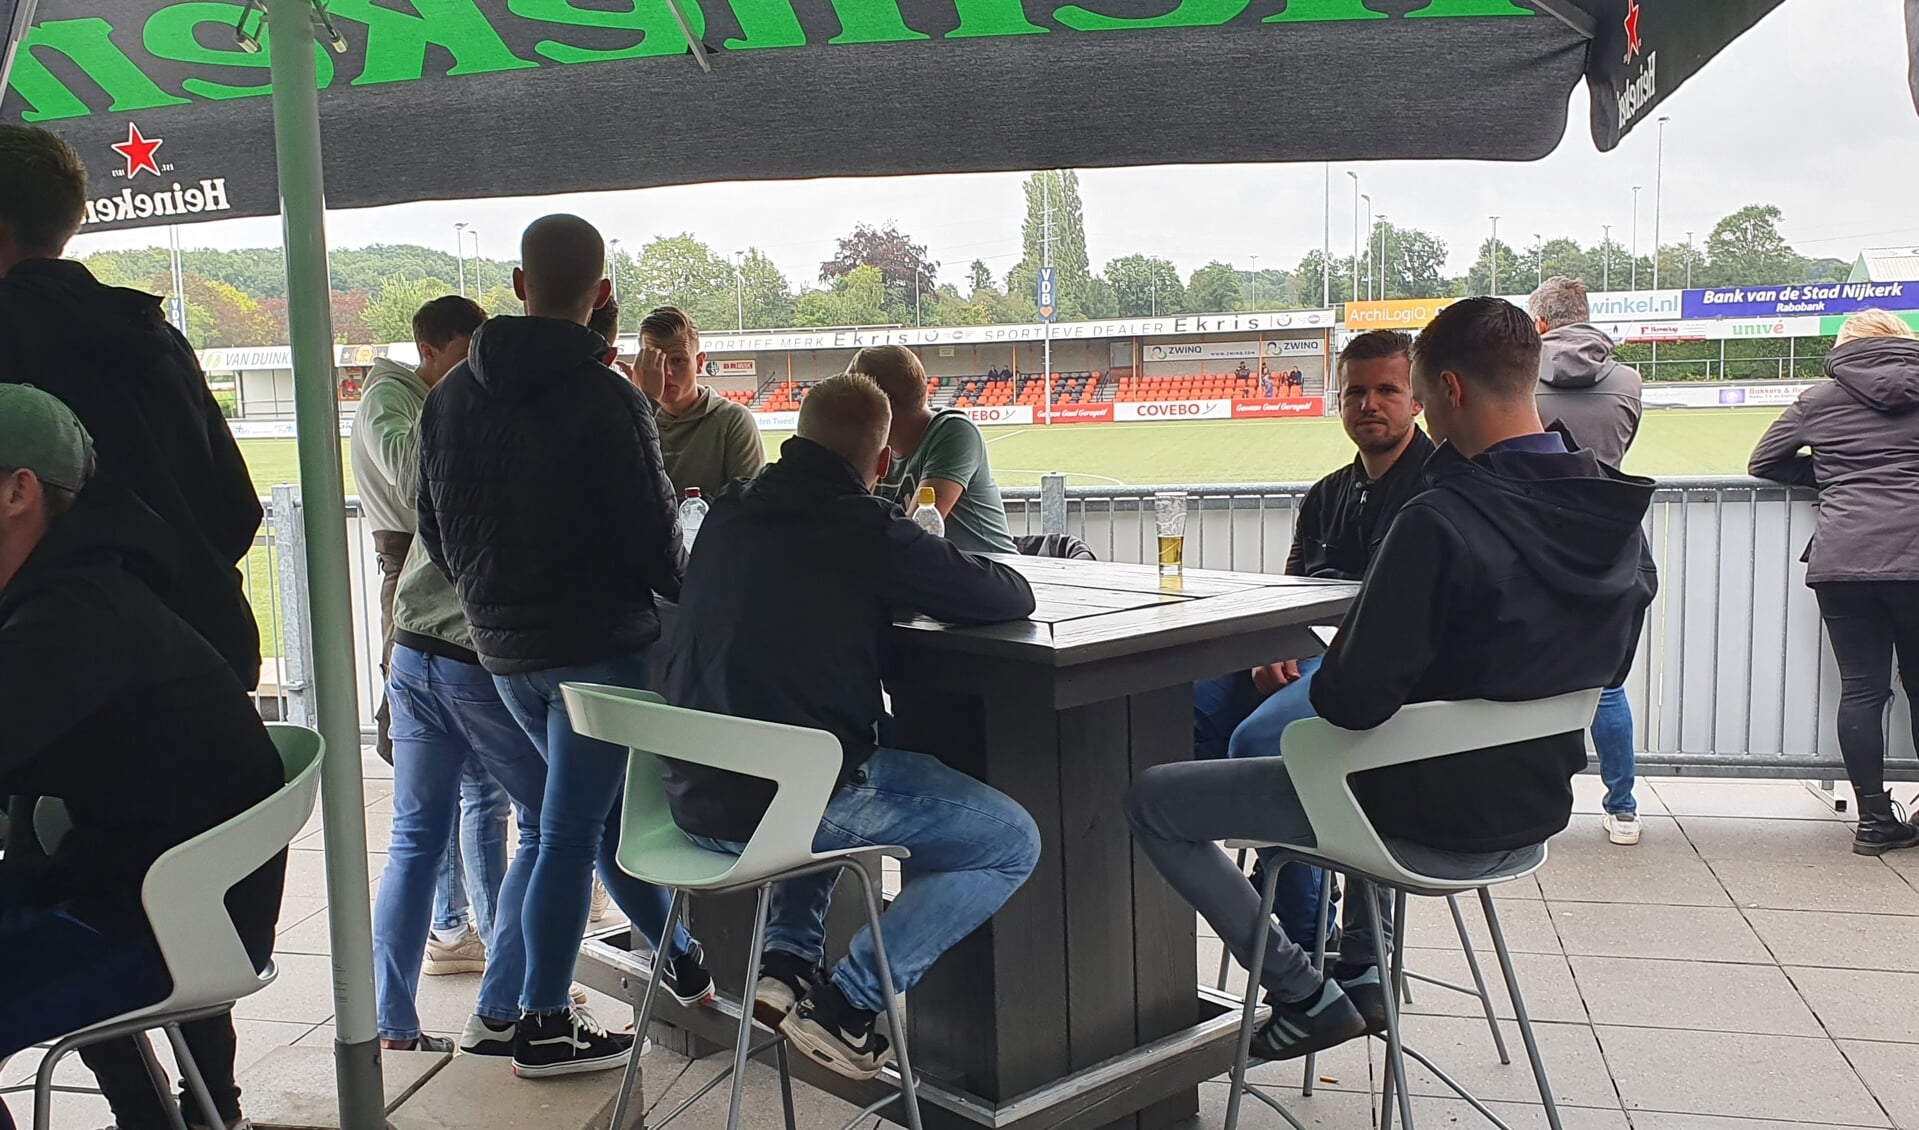 Op het terras bij Sparta Nijkerk hielden de fans zich aan de nieuwe regels.